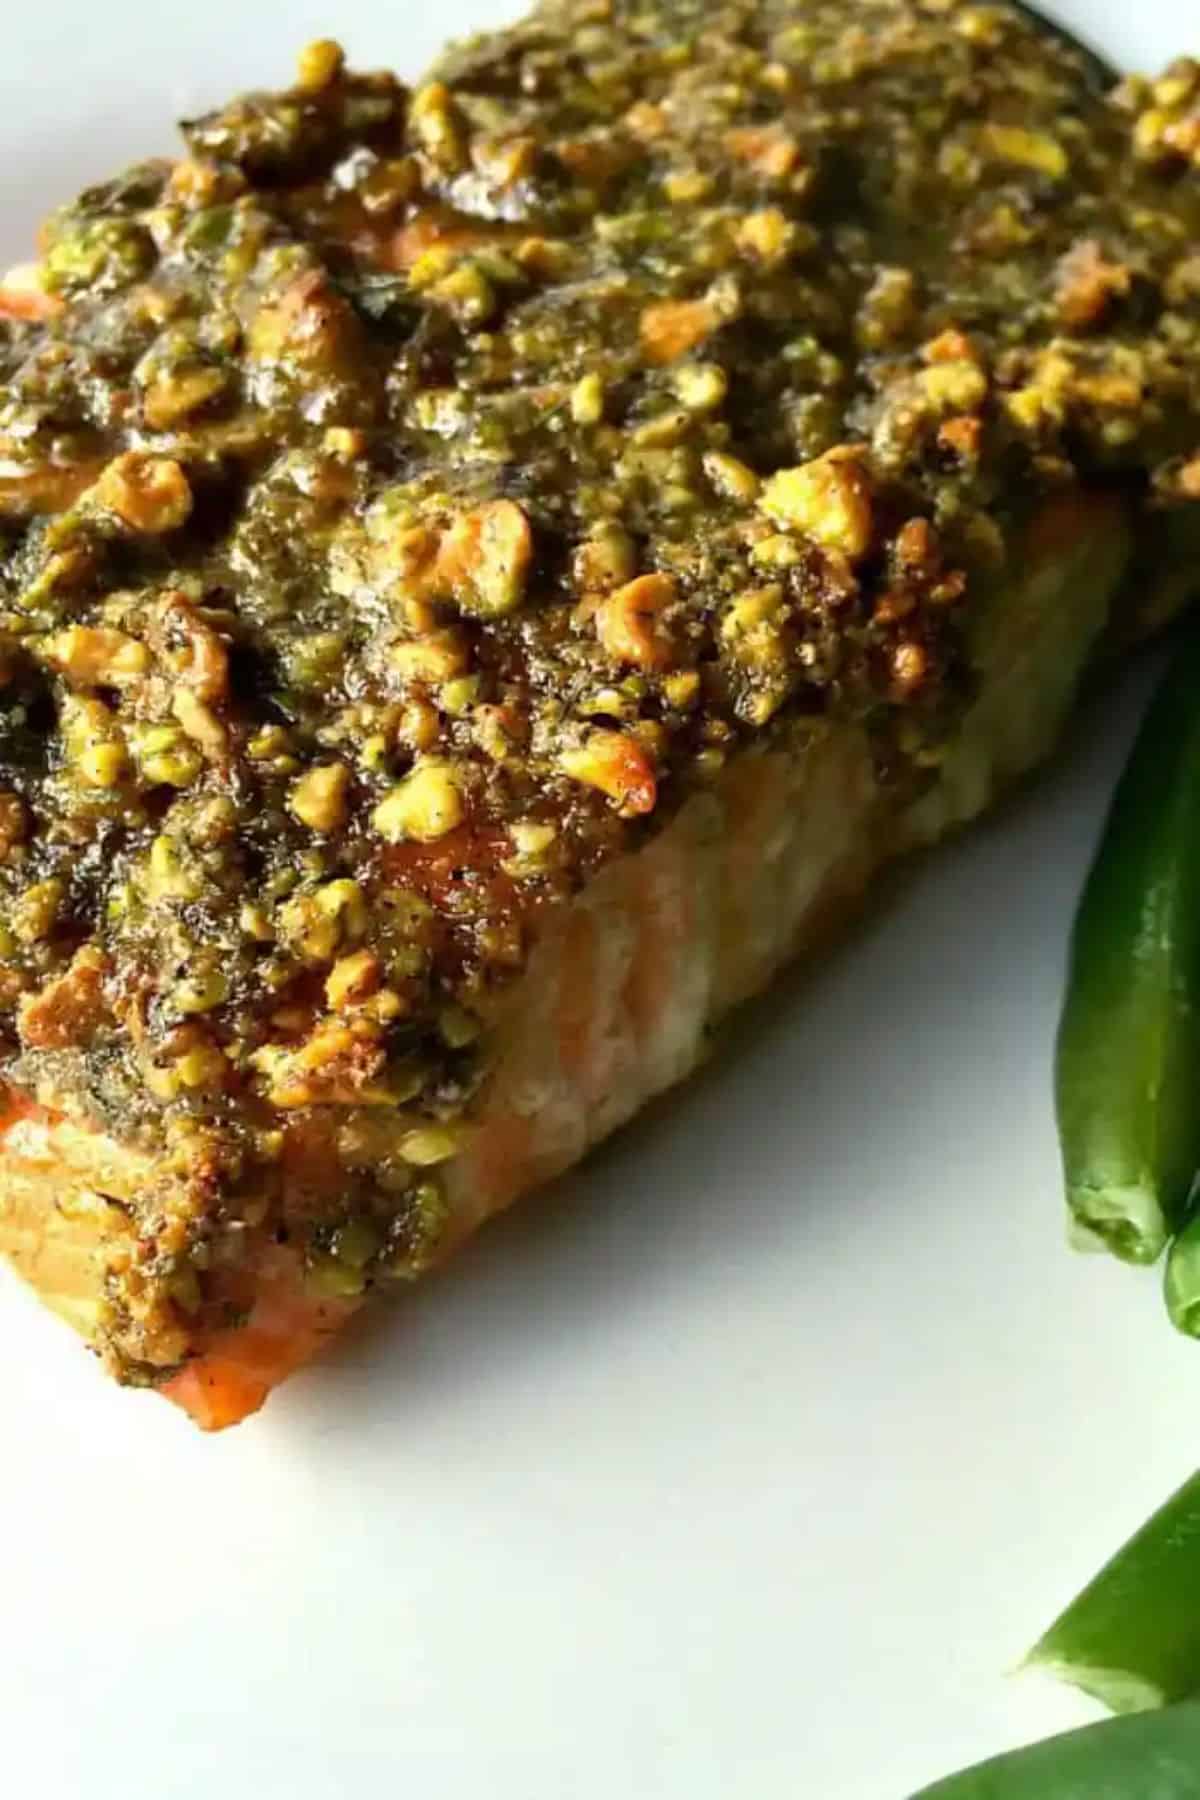 A close-up of Pistachio Salmon With Lemon.